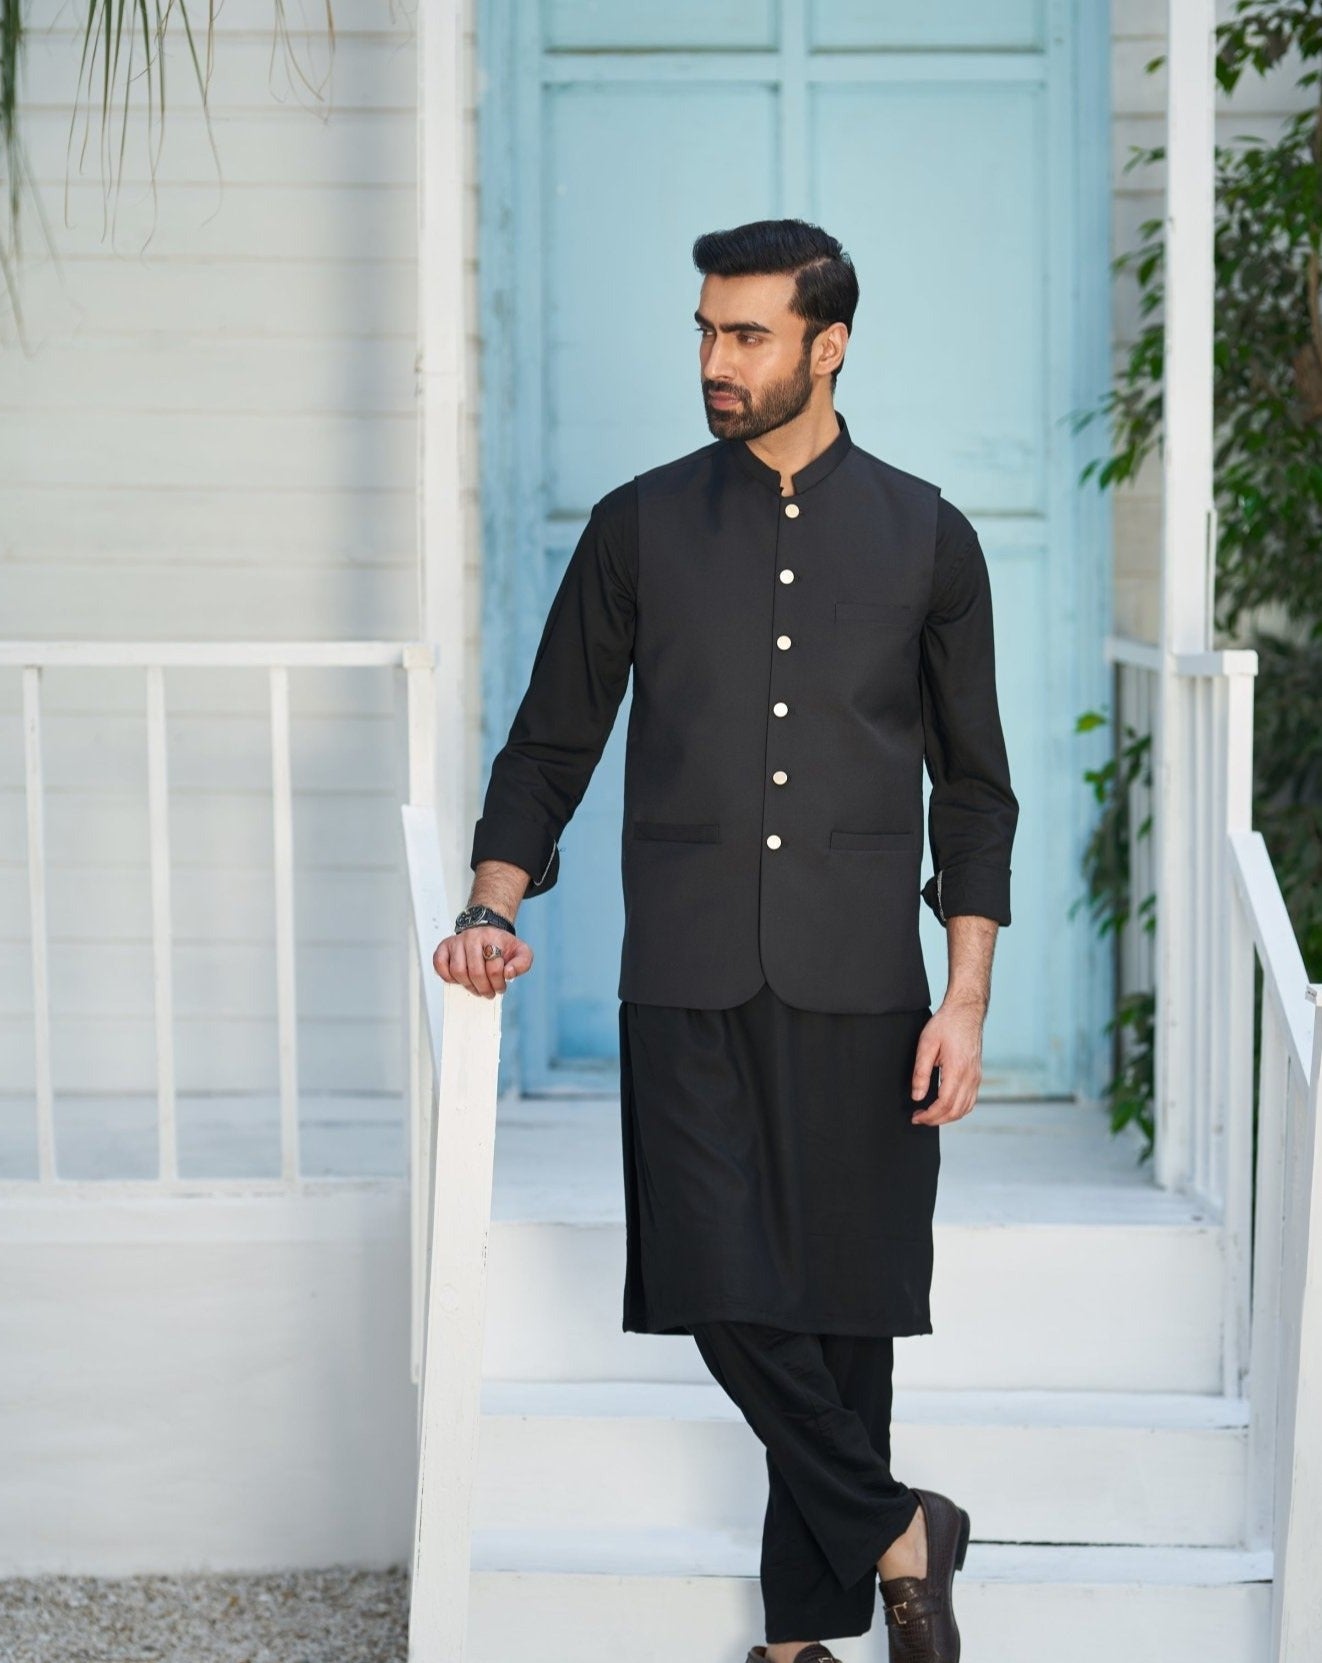 Black Shalwar Kameez with Waistcoat for Men